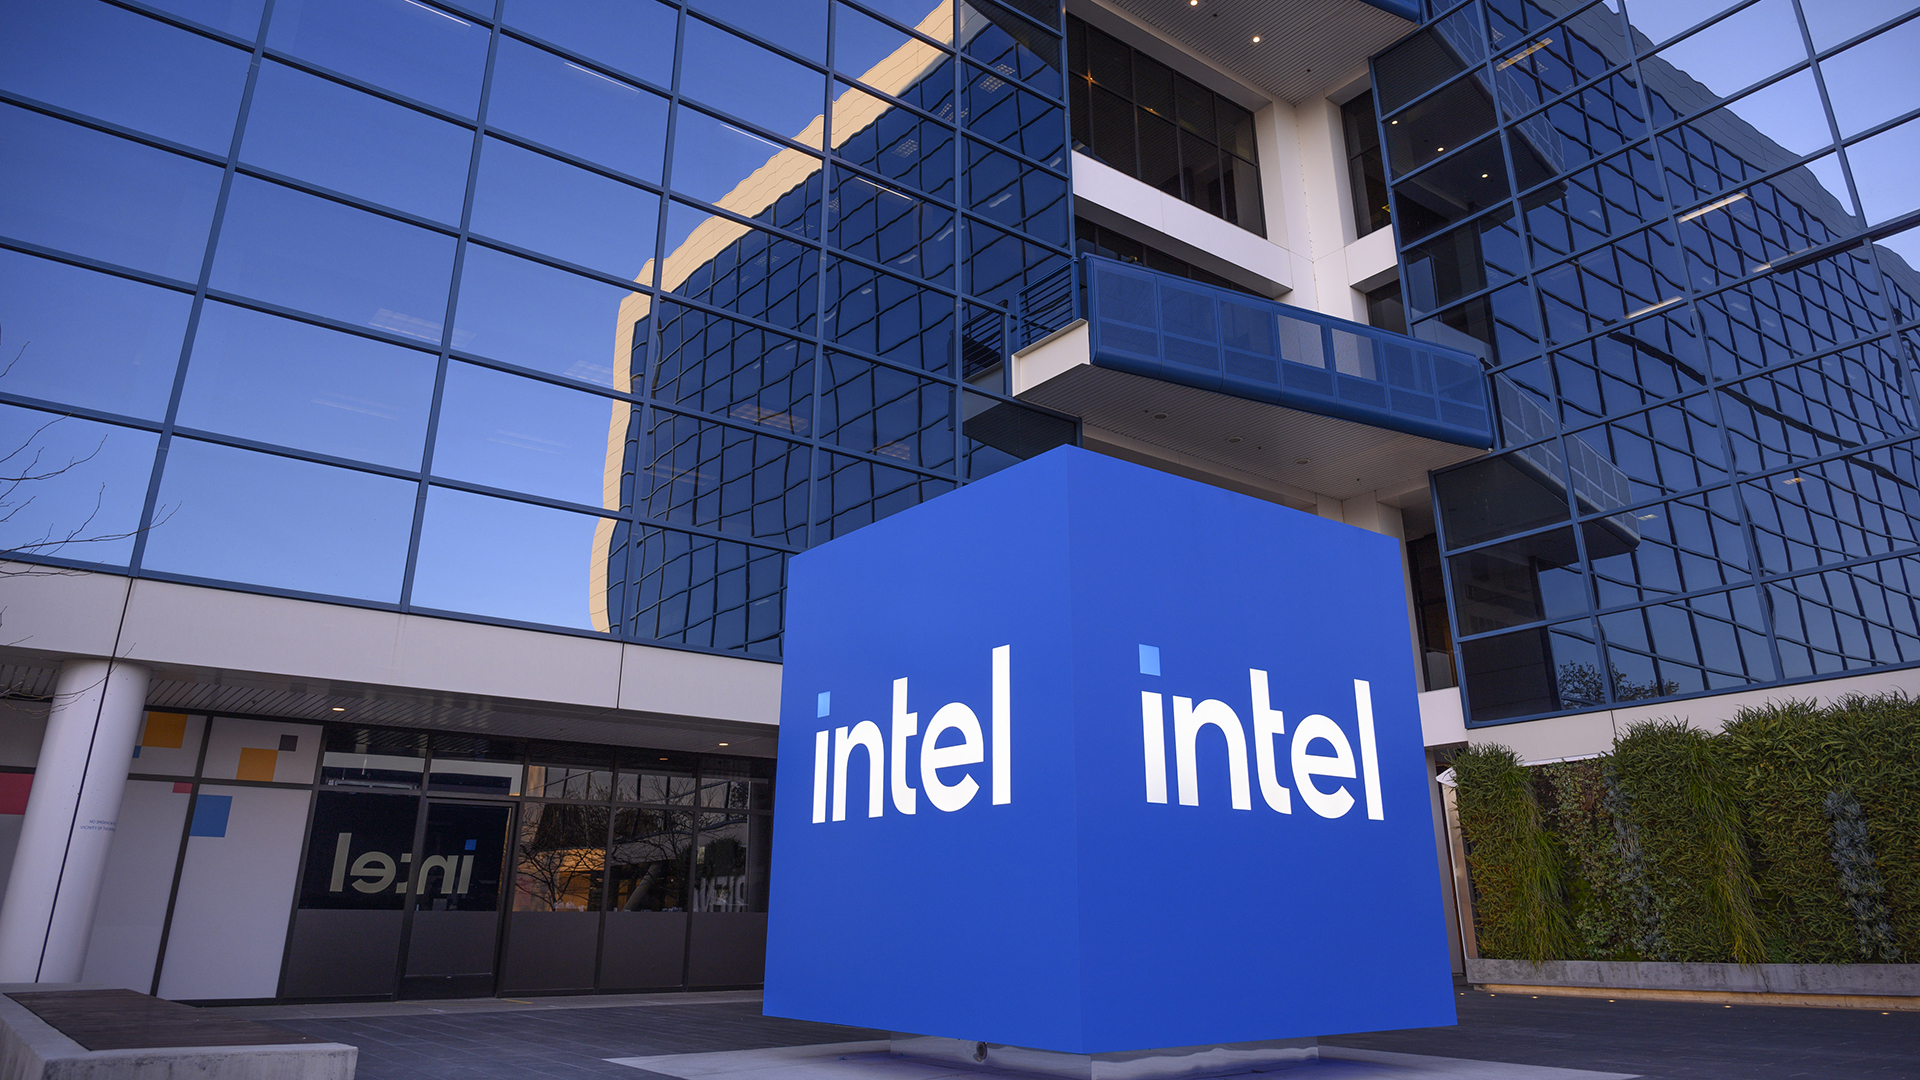 Il quartier generale di Intel Corporation - The Robert Noyce Building in Santa Clara, California.